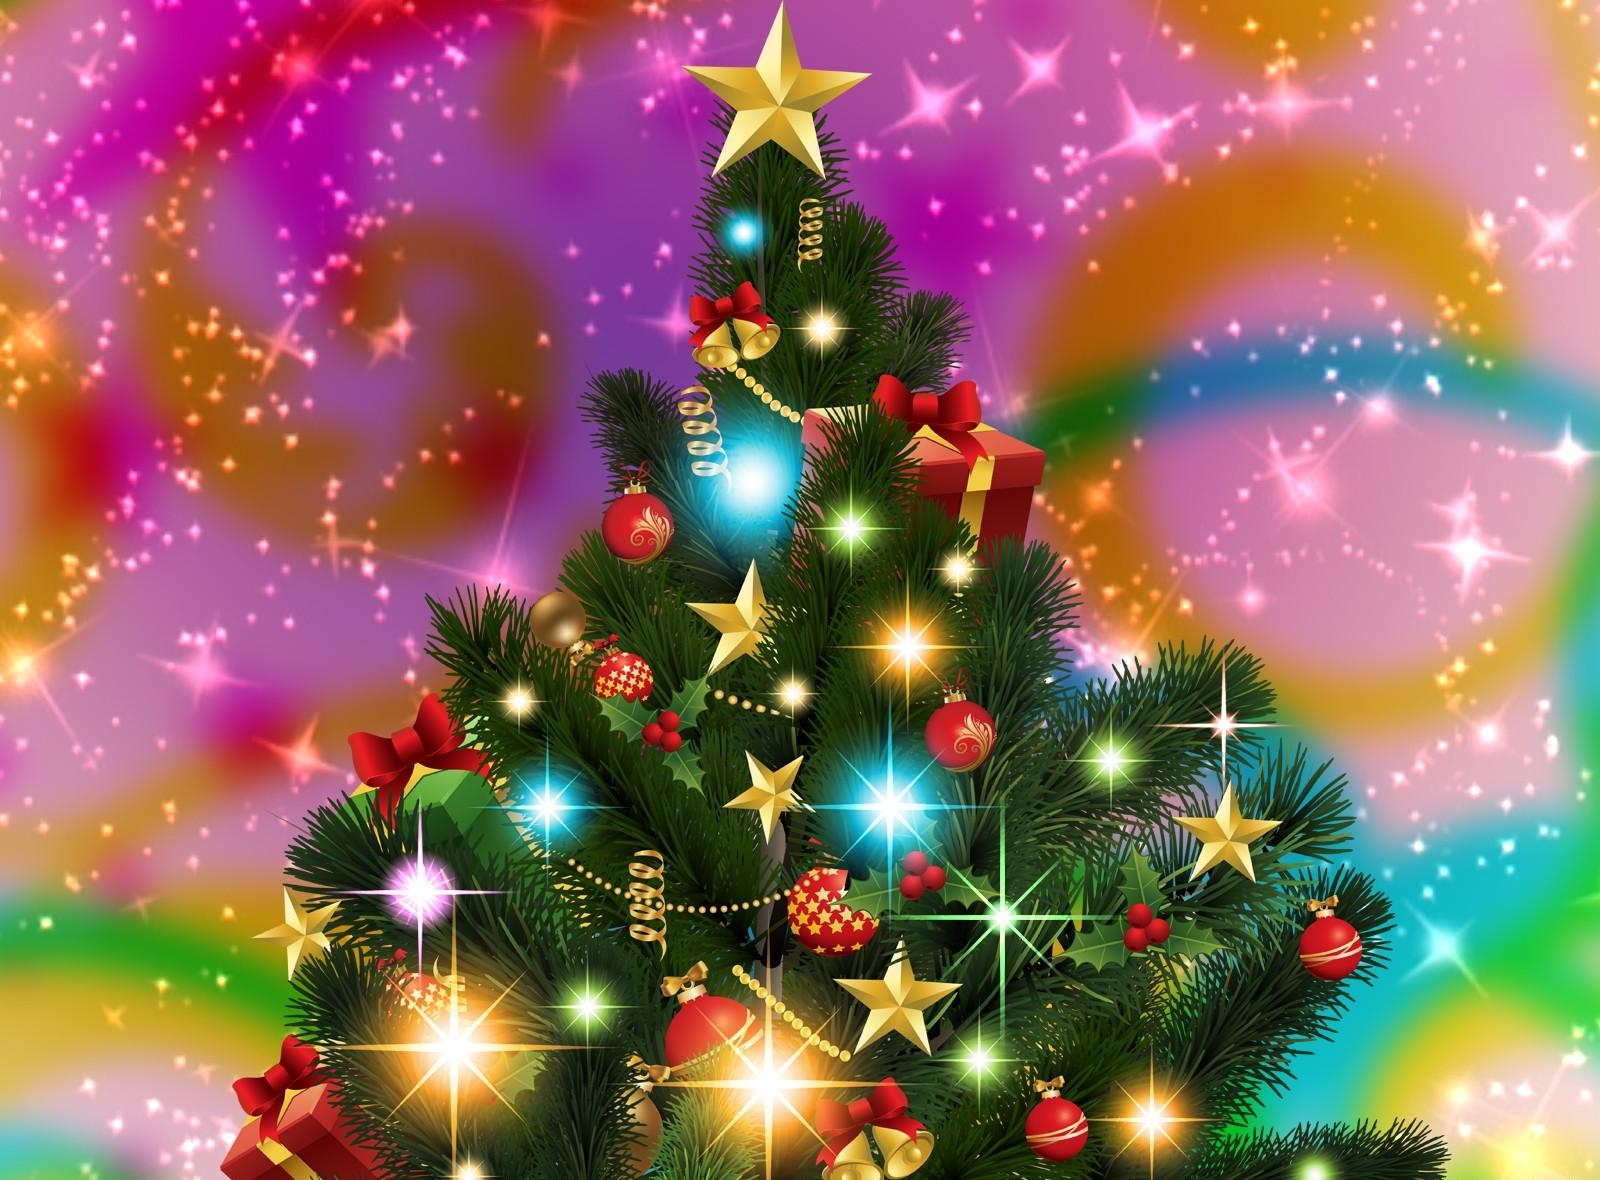 shining, christmas tree, holidays, stars, holiday, garland, garlands